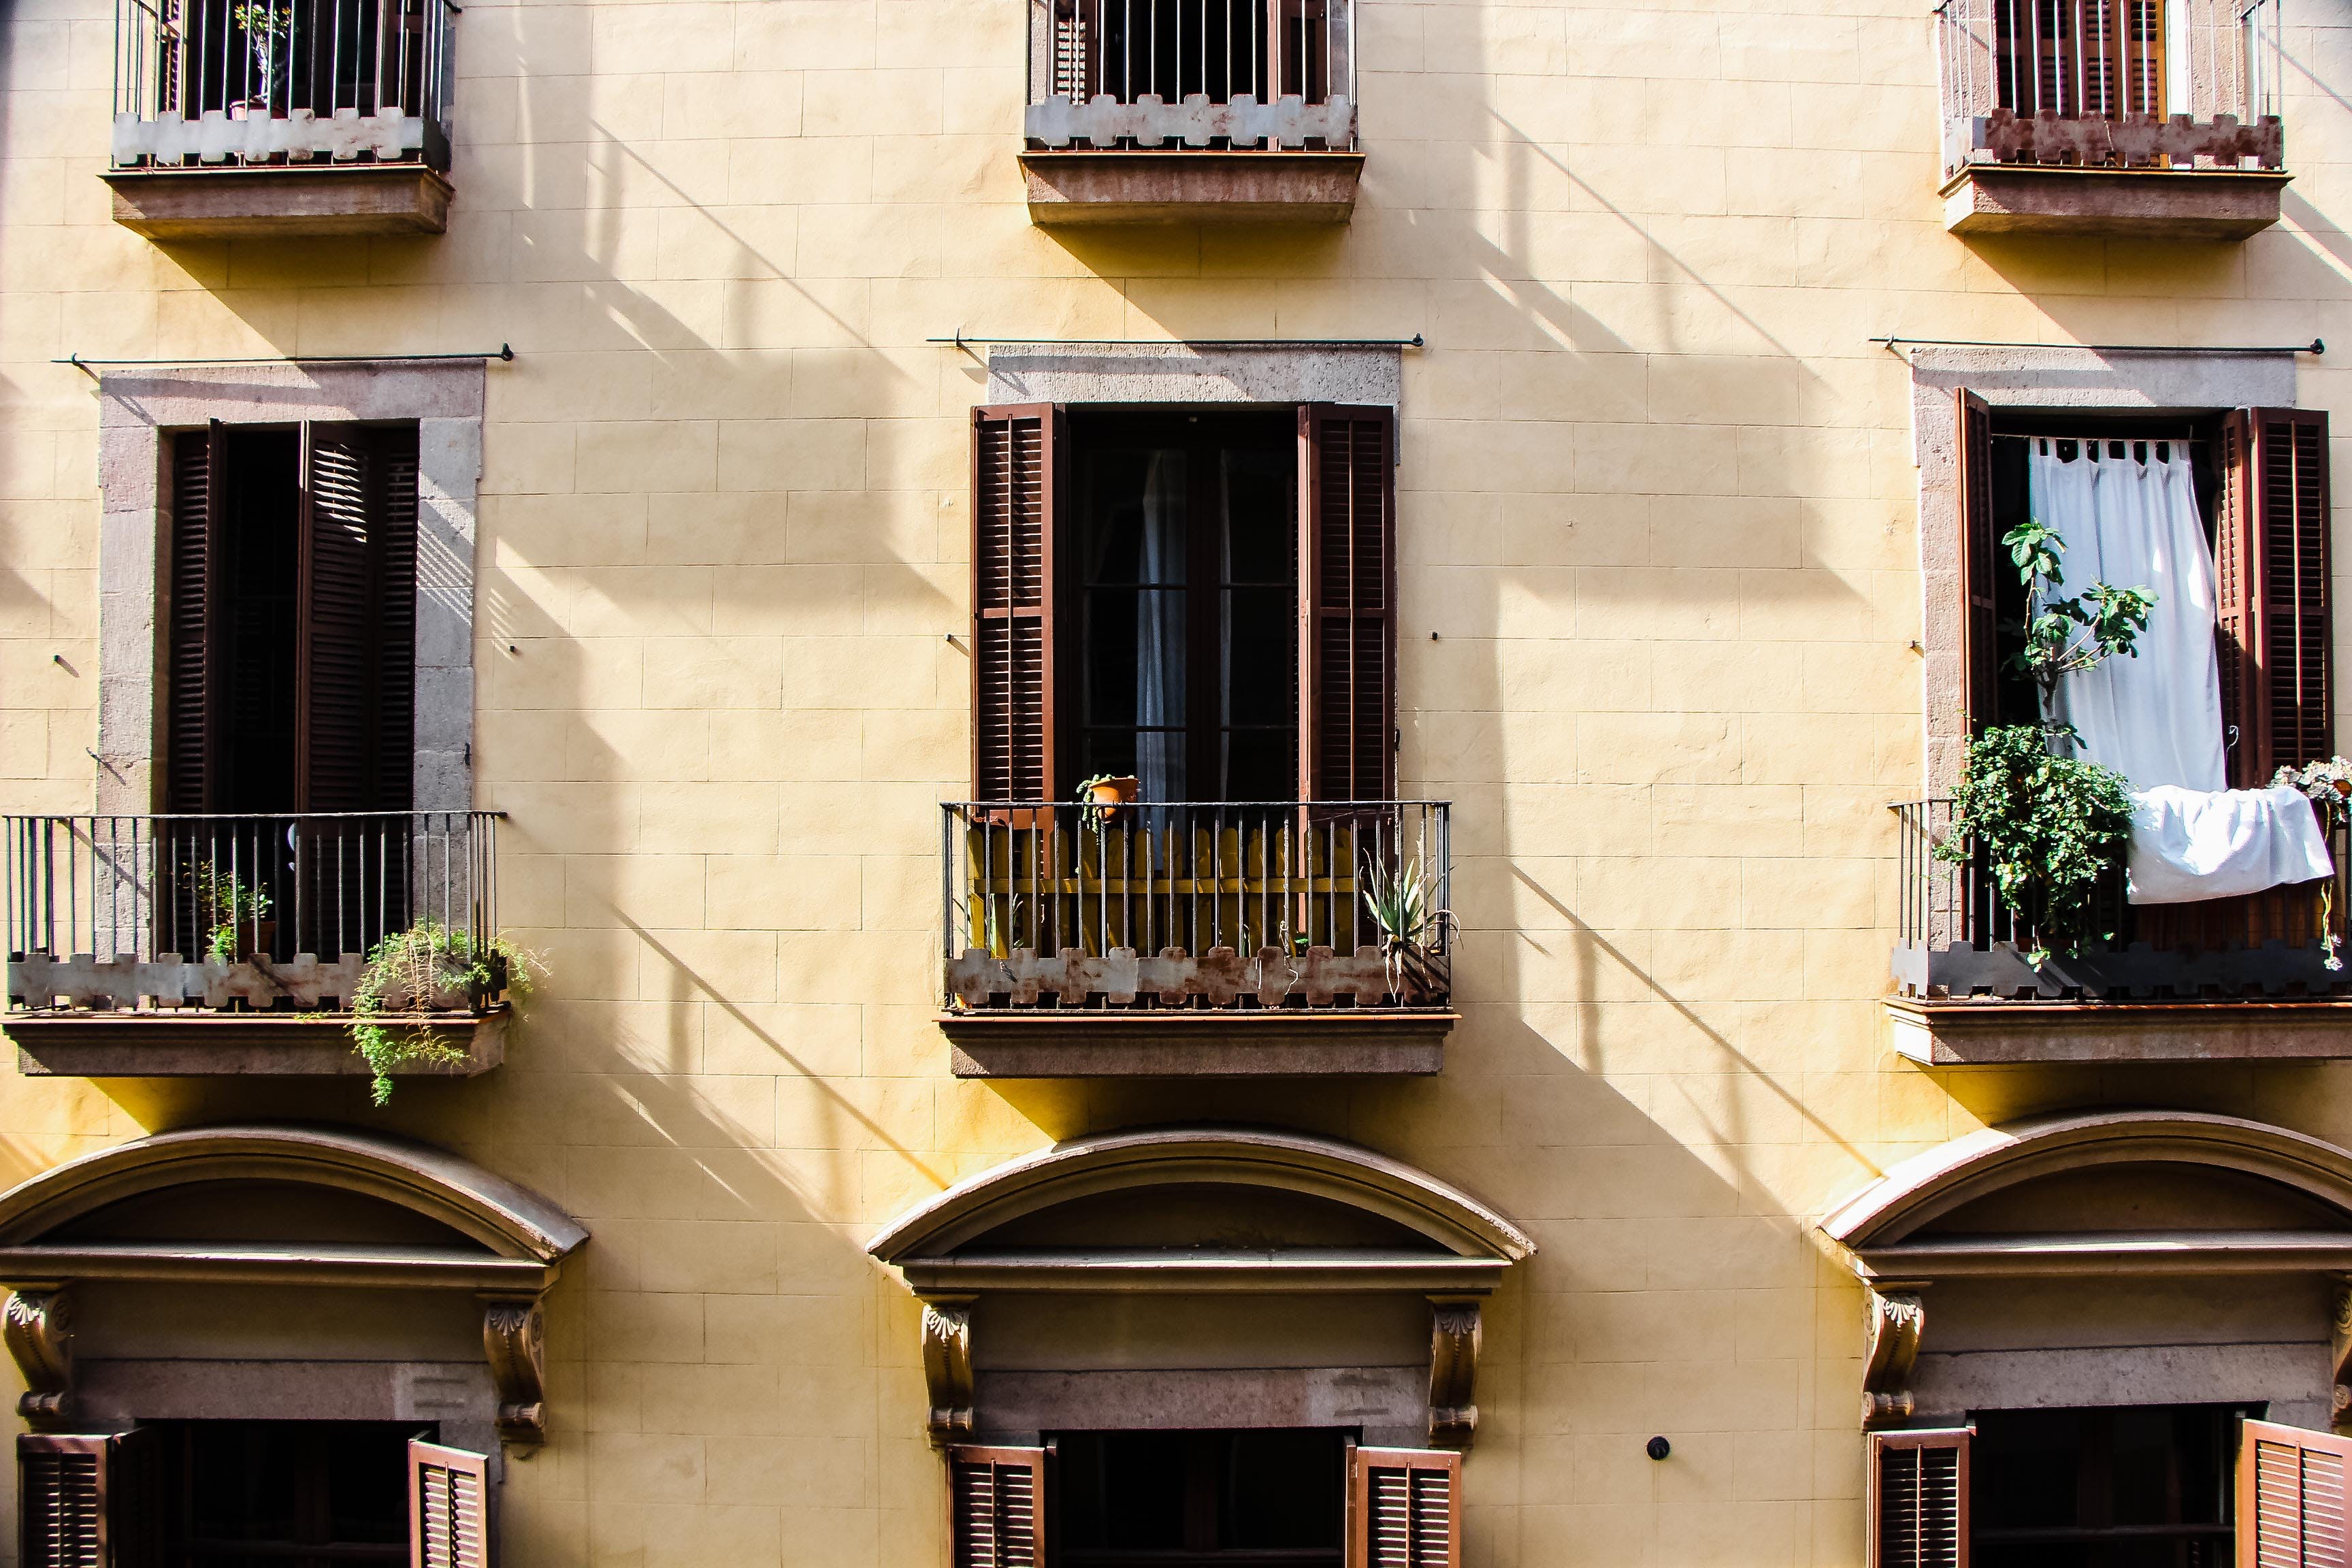 Balconies in the building | Source: Pexels